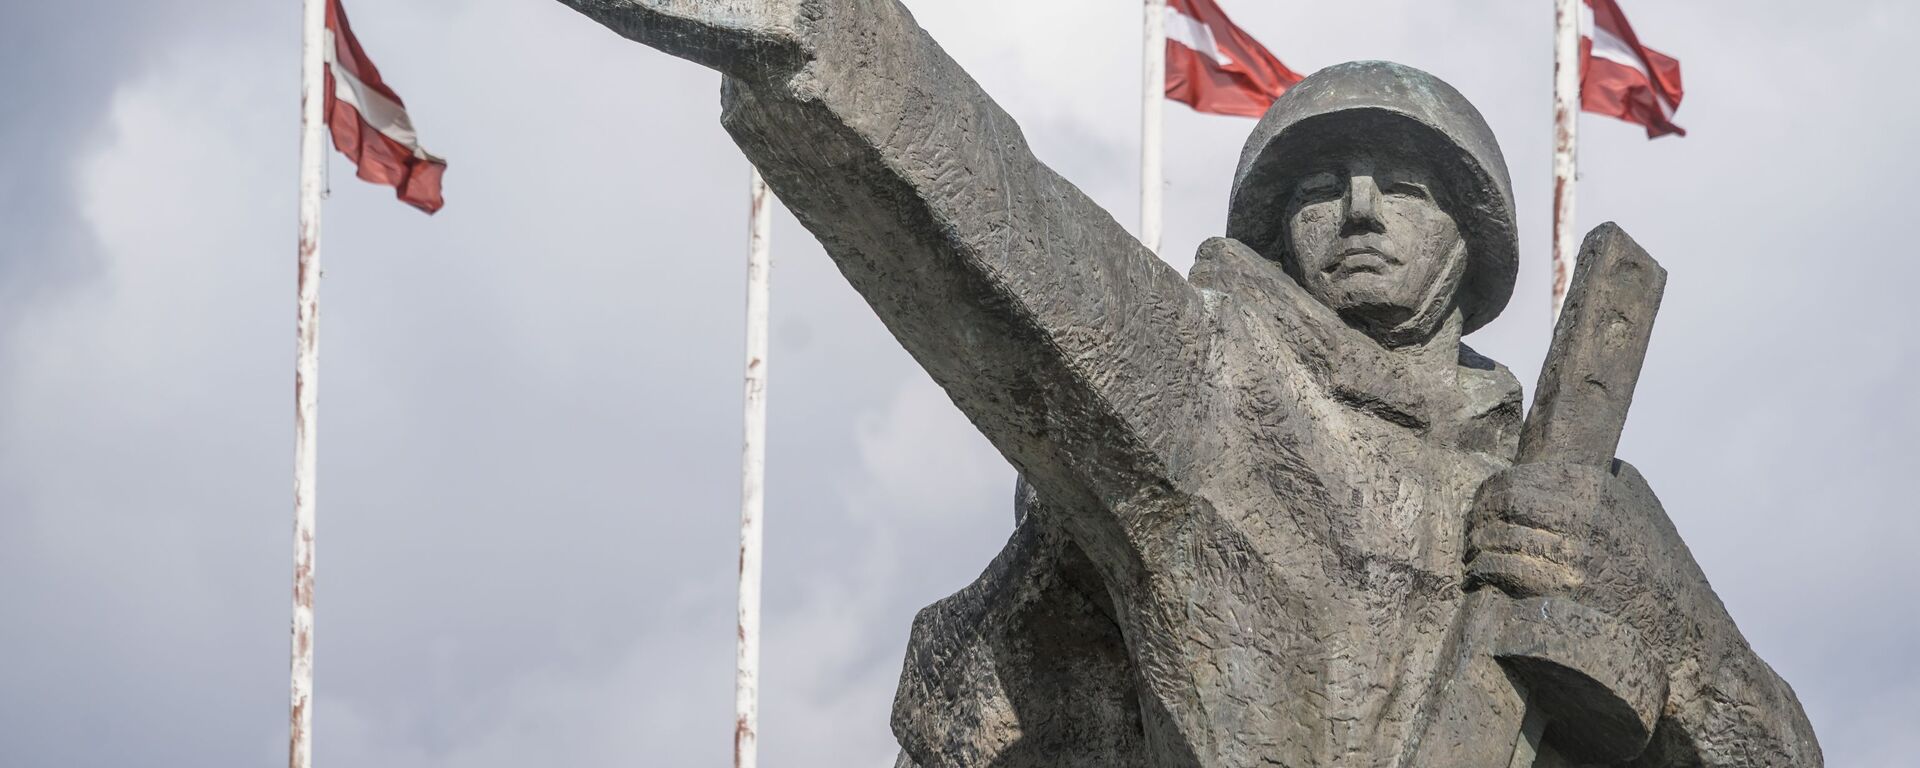 Памятник Освободителям Риги - Sputnik Латвия, 1920, 02.12.2021